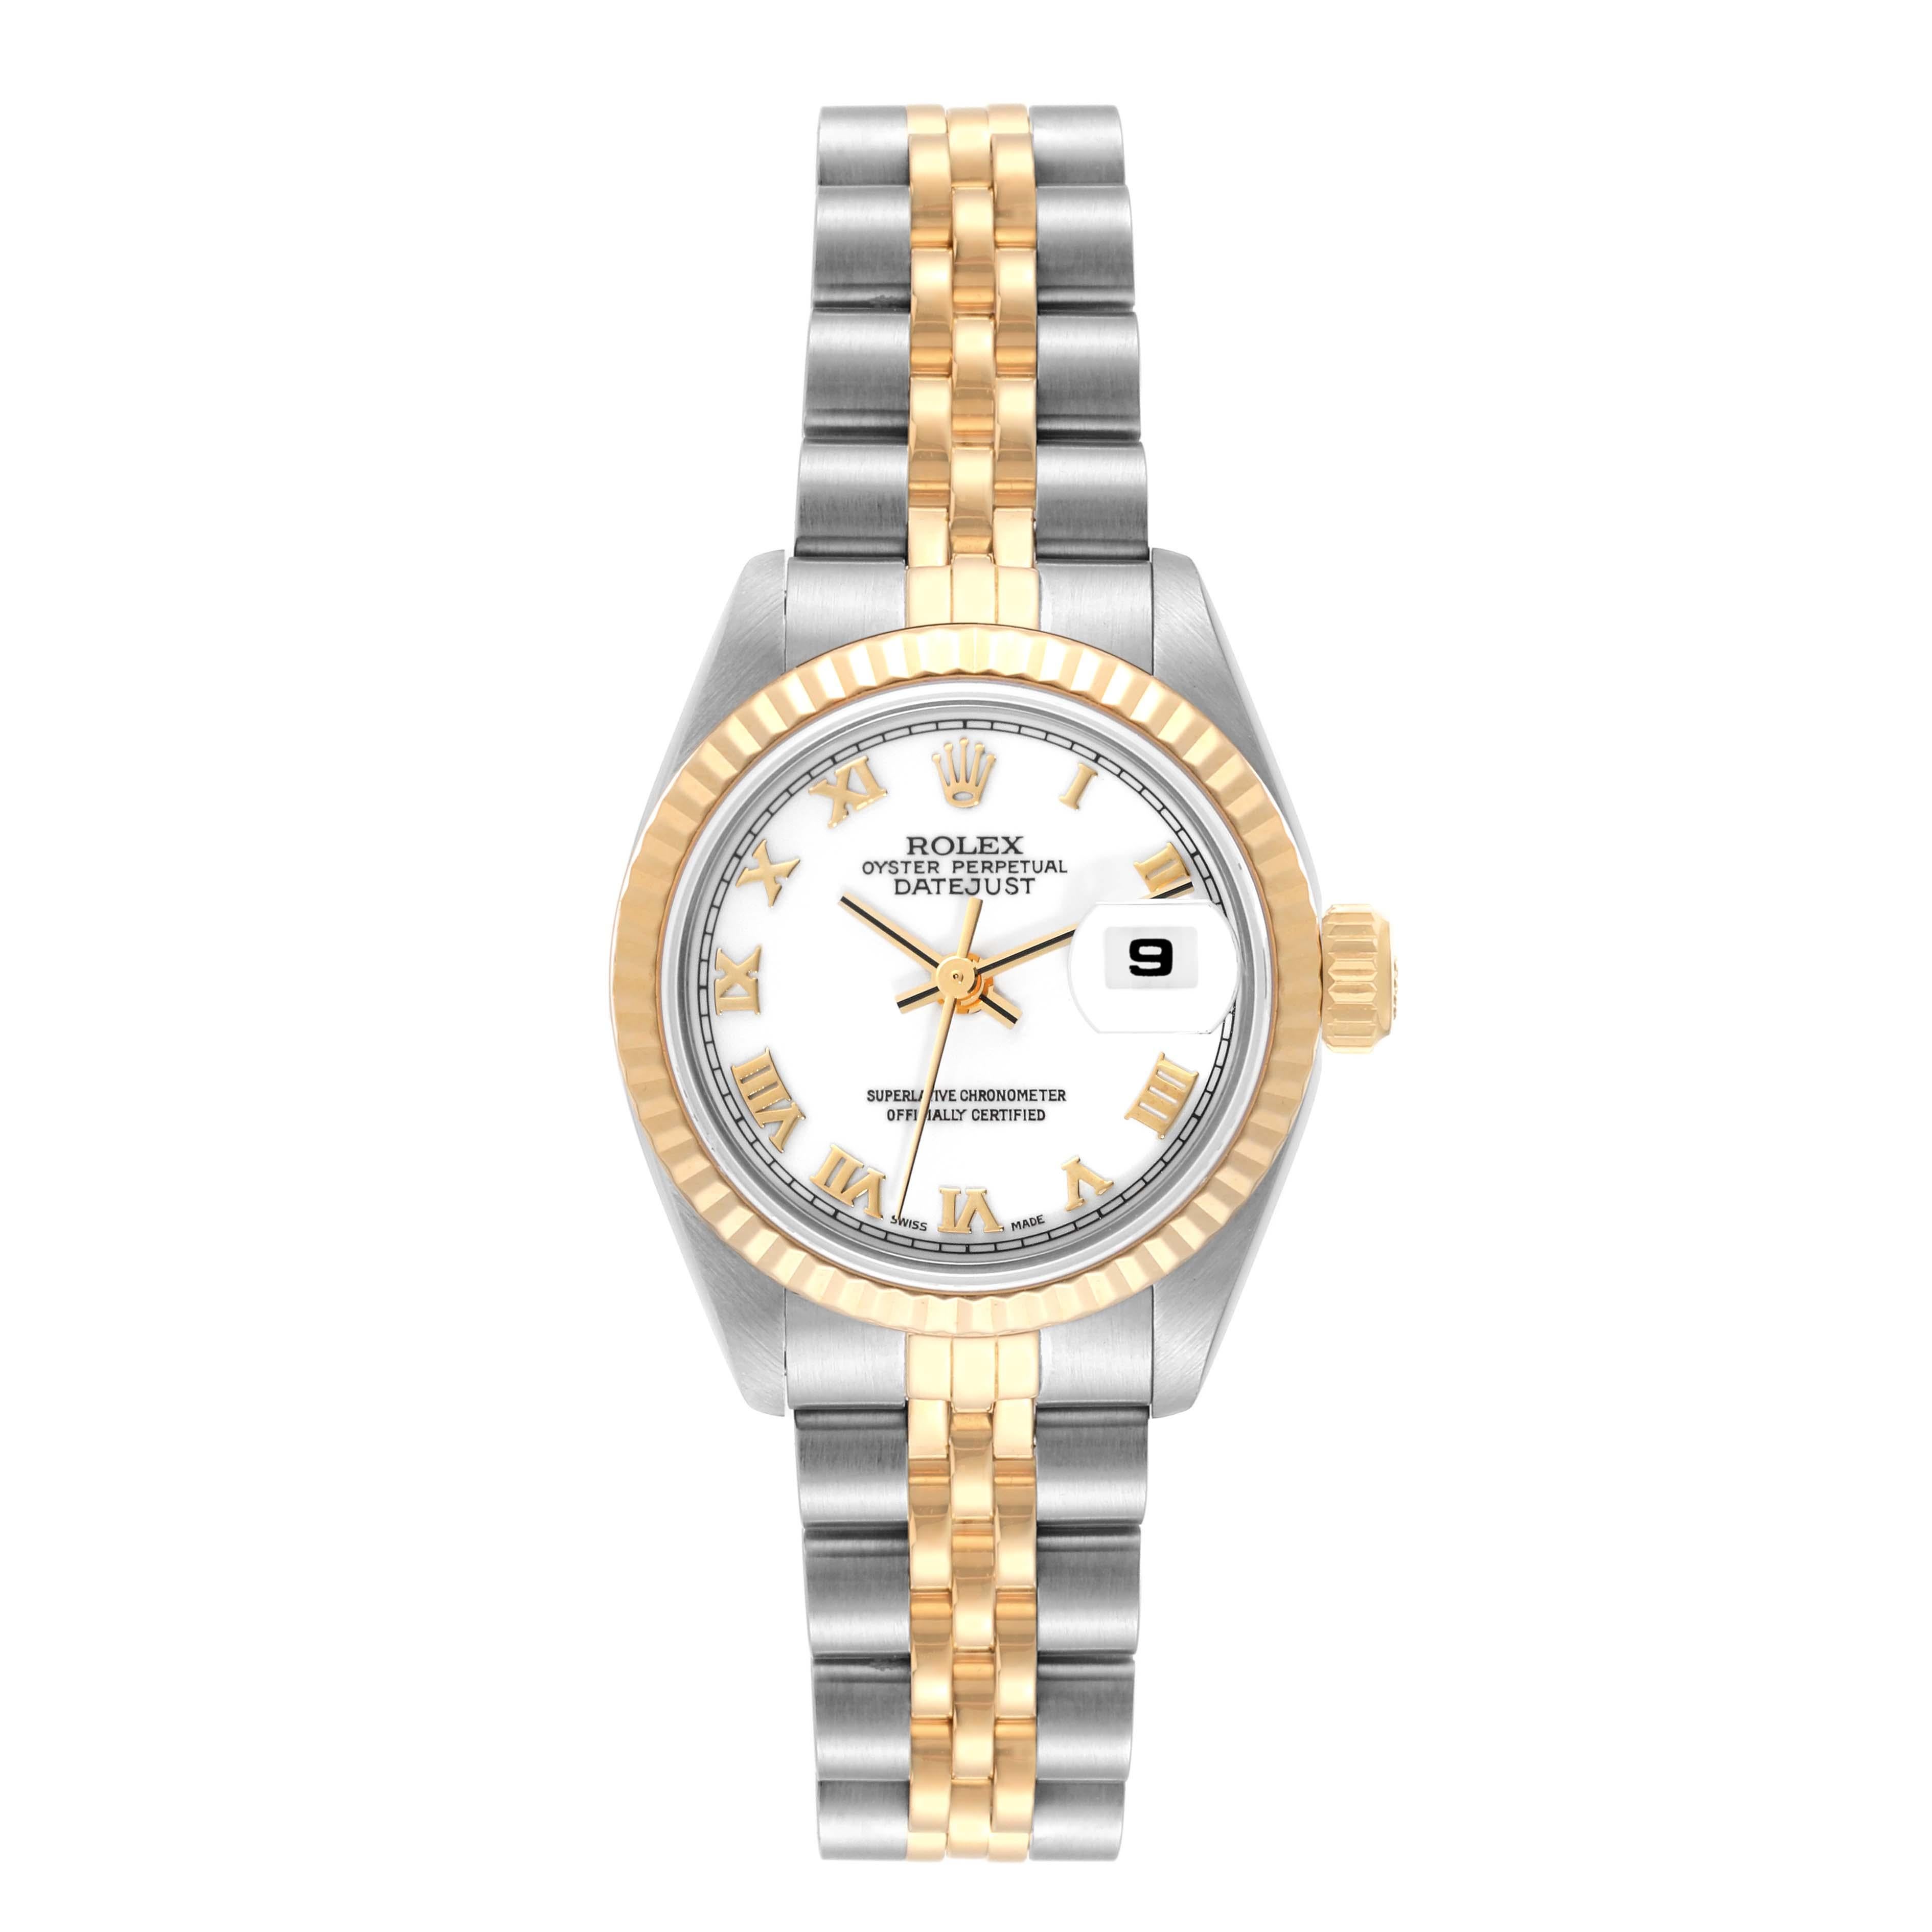 Rolex Datejust White Dial Steel Yellow Gold Ladies Watch 69173. Mouvement automatique à remontage automatique, officiellement certifié chronomètre. Boîtier oyster en acier inoxydable de 26.0 mm de diamètre. Logo Rolex sur la couronne. Lunette